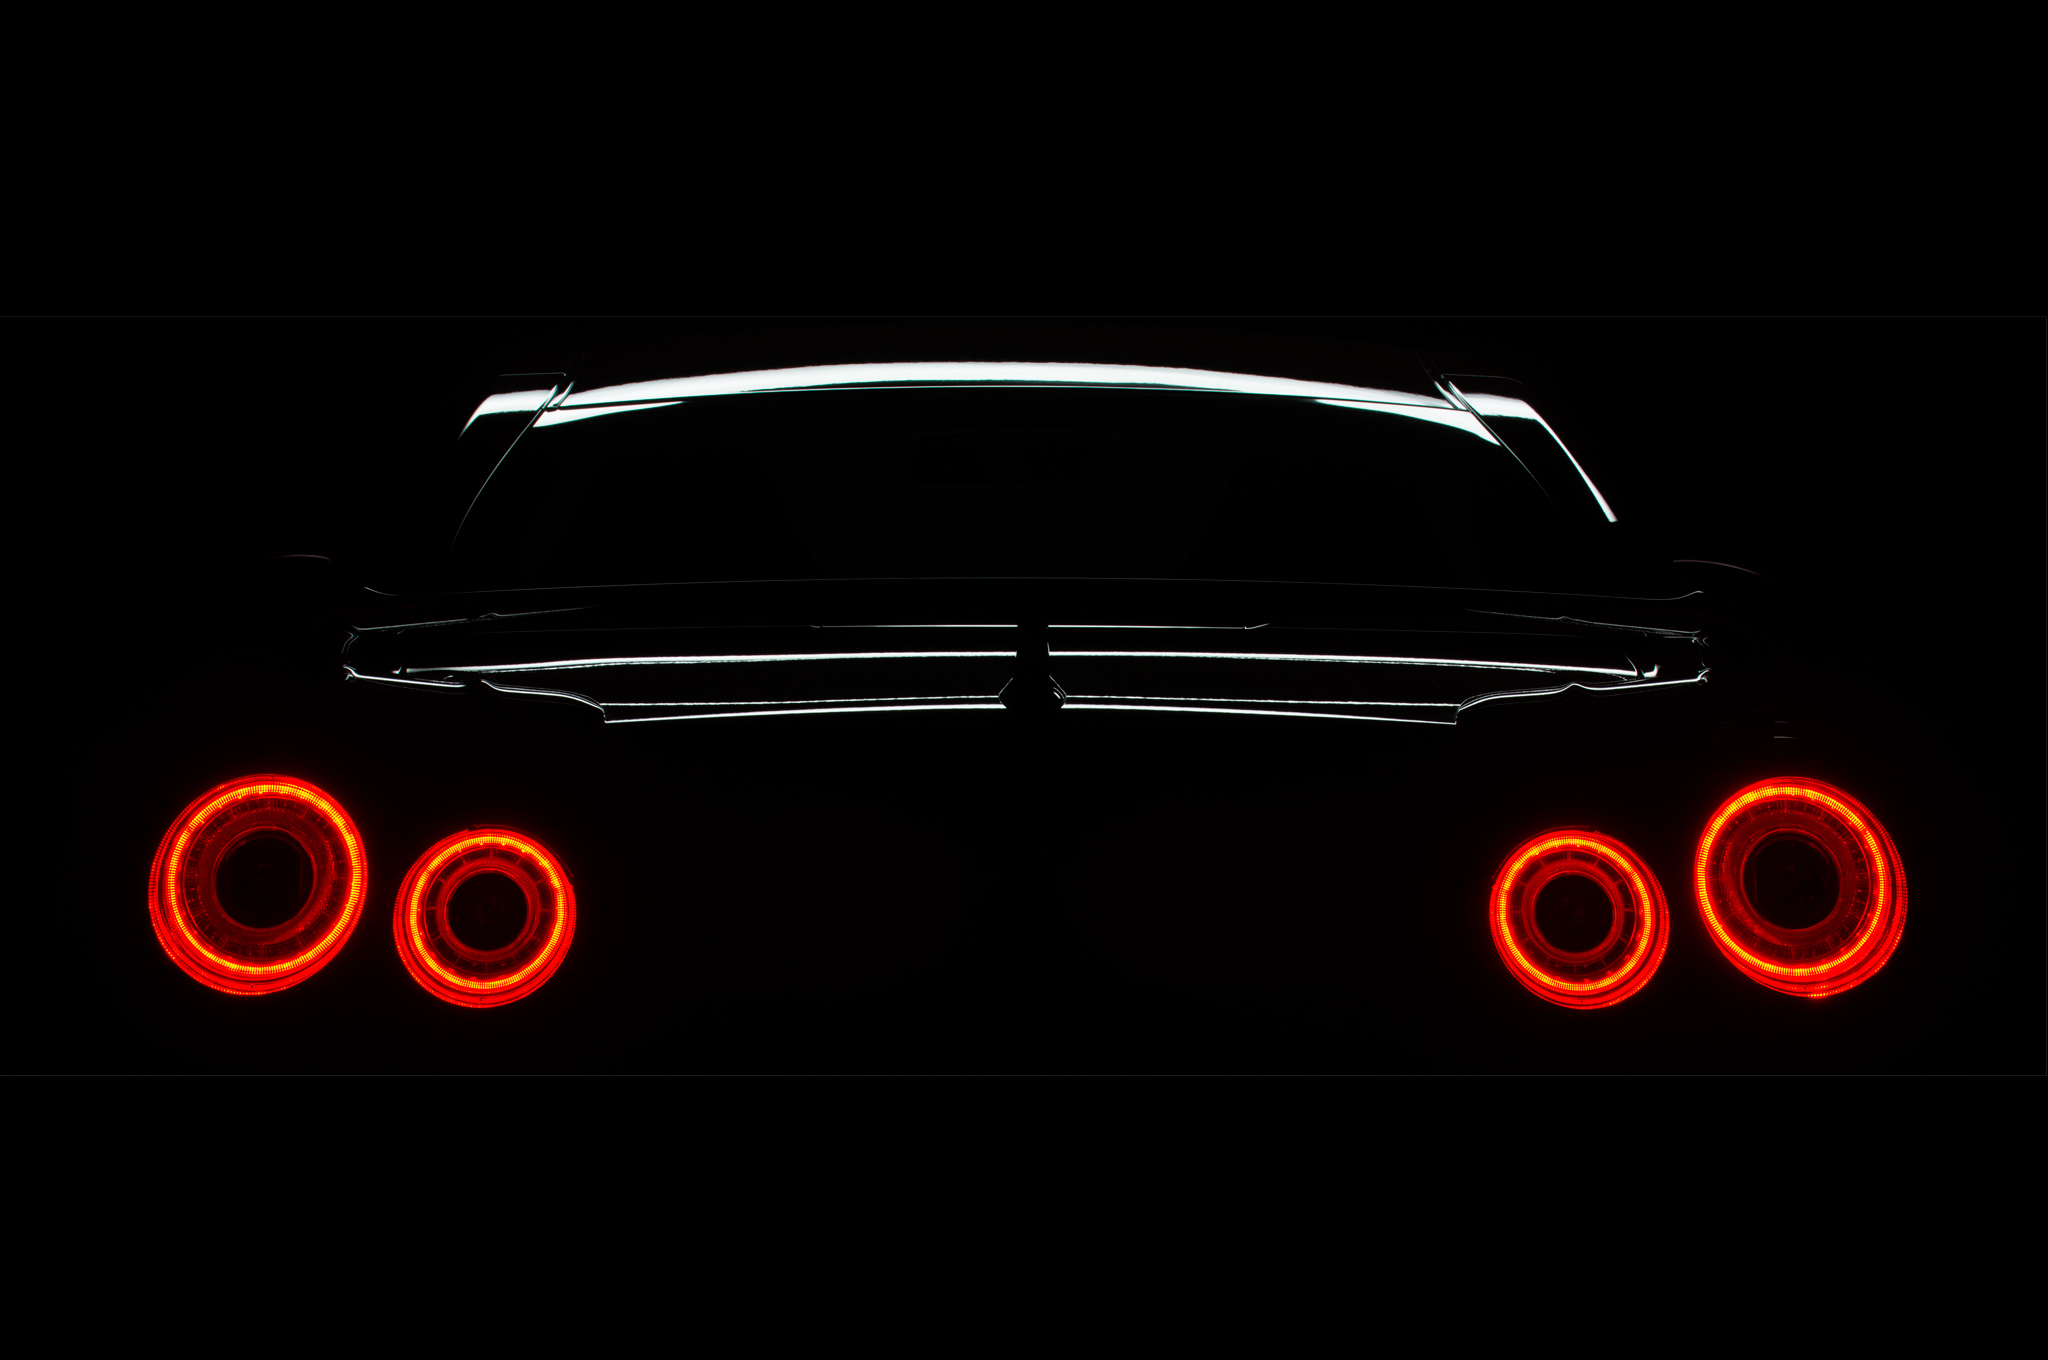 2015-Nissan-GT-R-JDM-rear-taillight-02 Lâm, un mec qui tient un blog de fil...